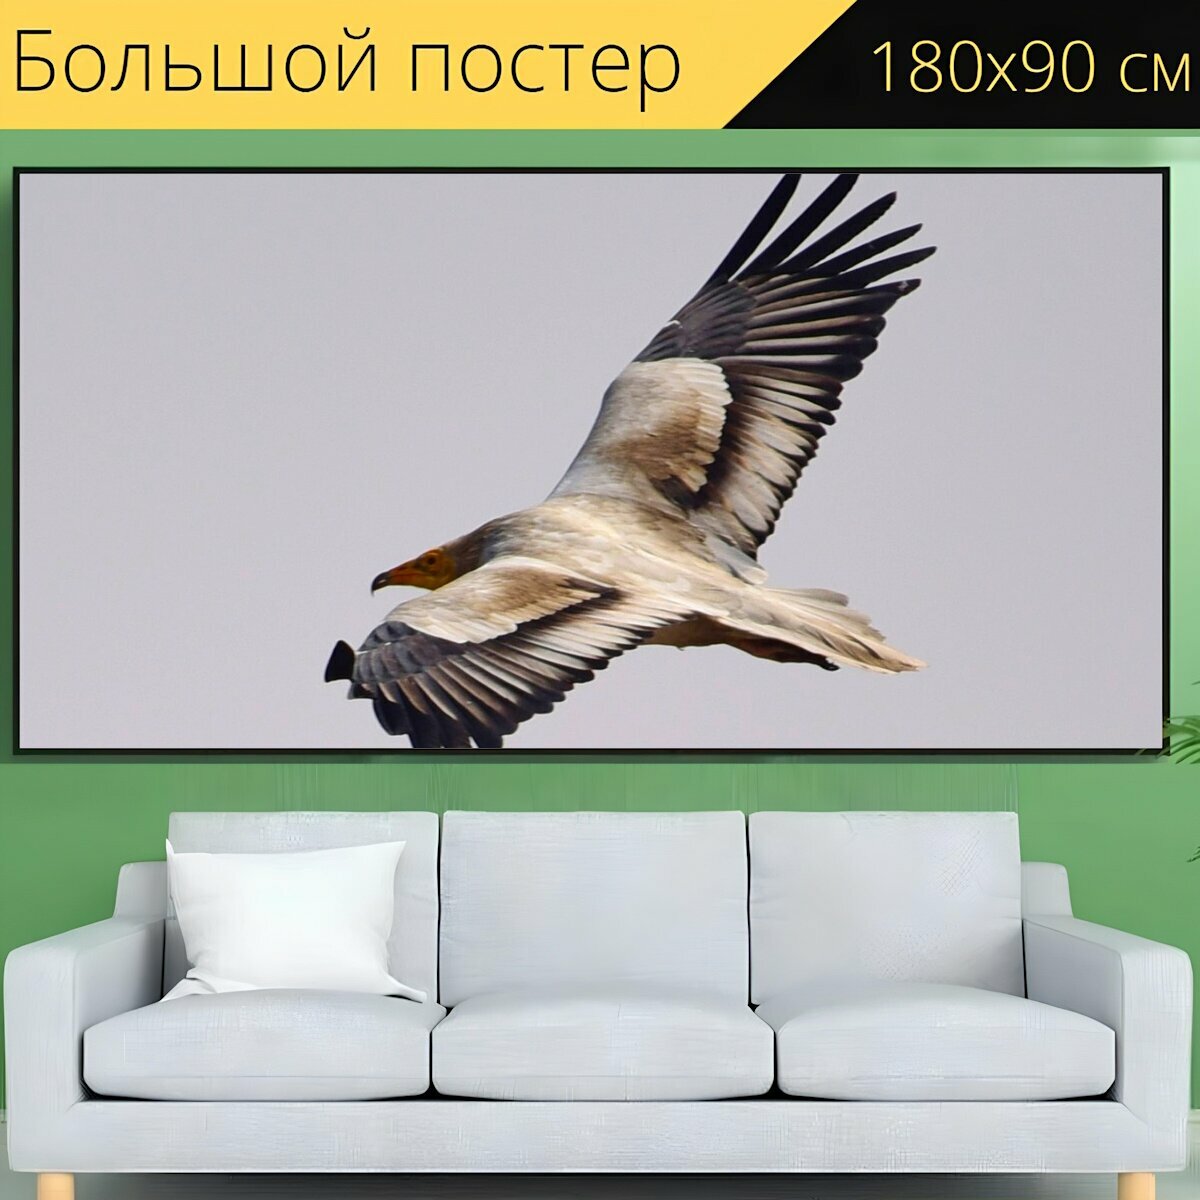 Большой постер "Стервятник, летающий, птица" 180 x 90 см. для интерьера